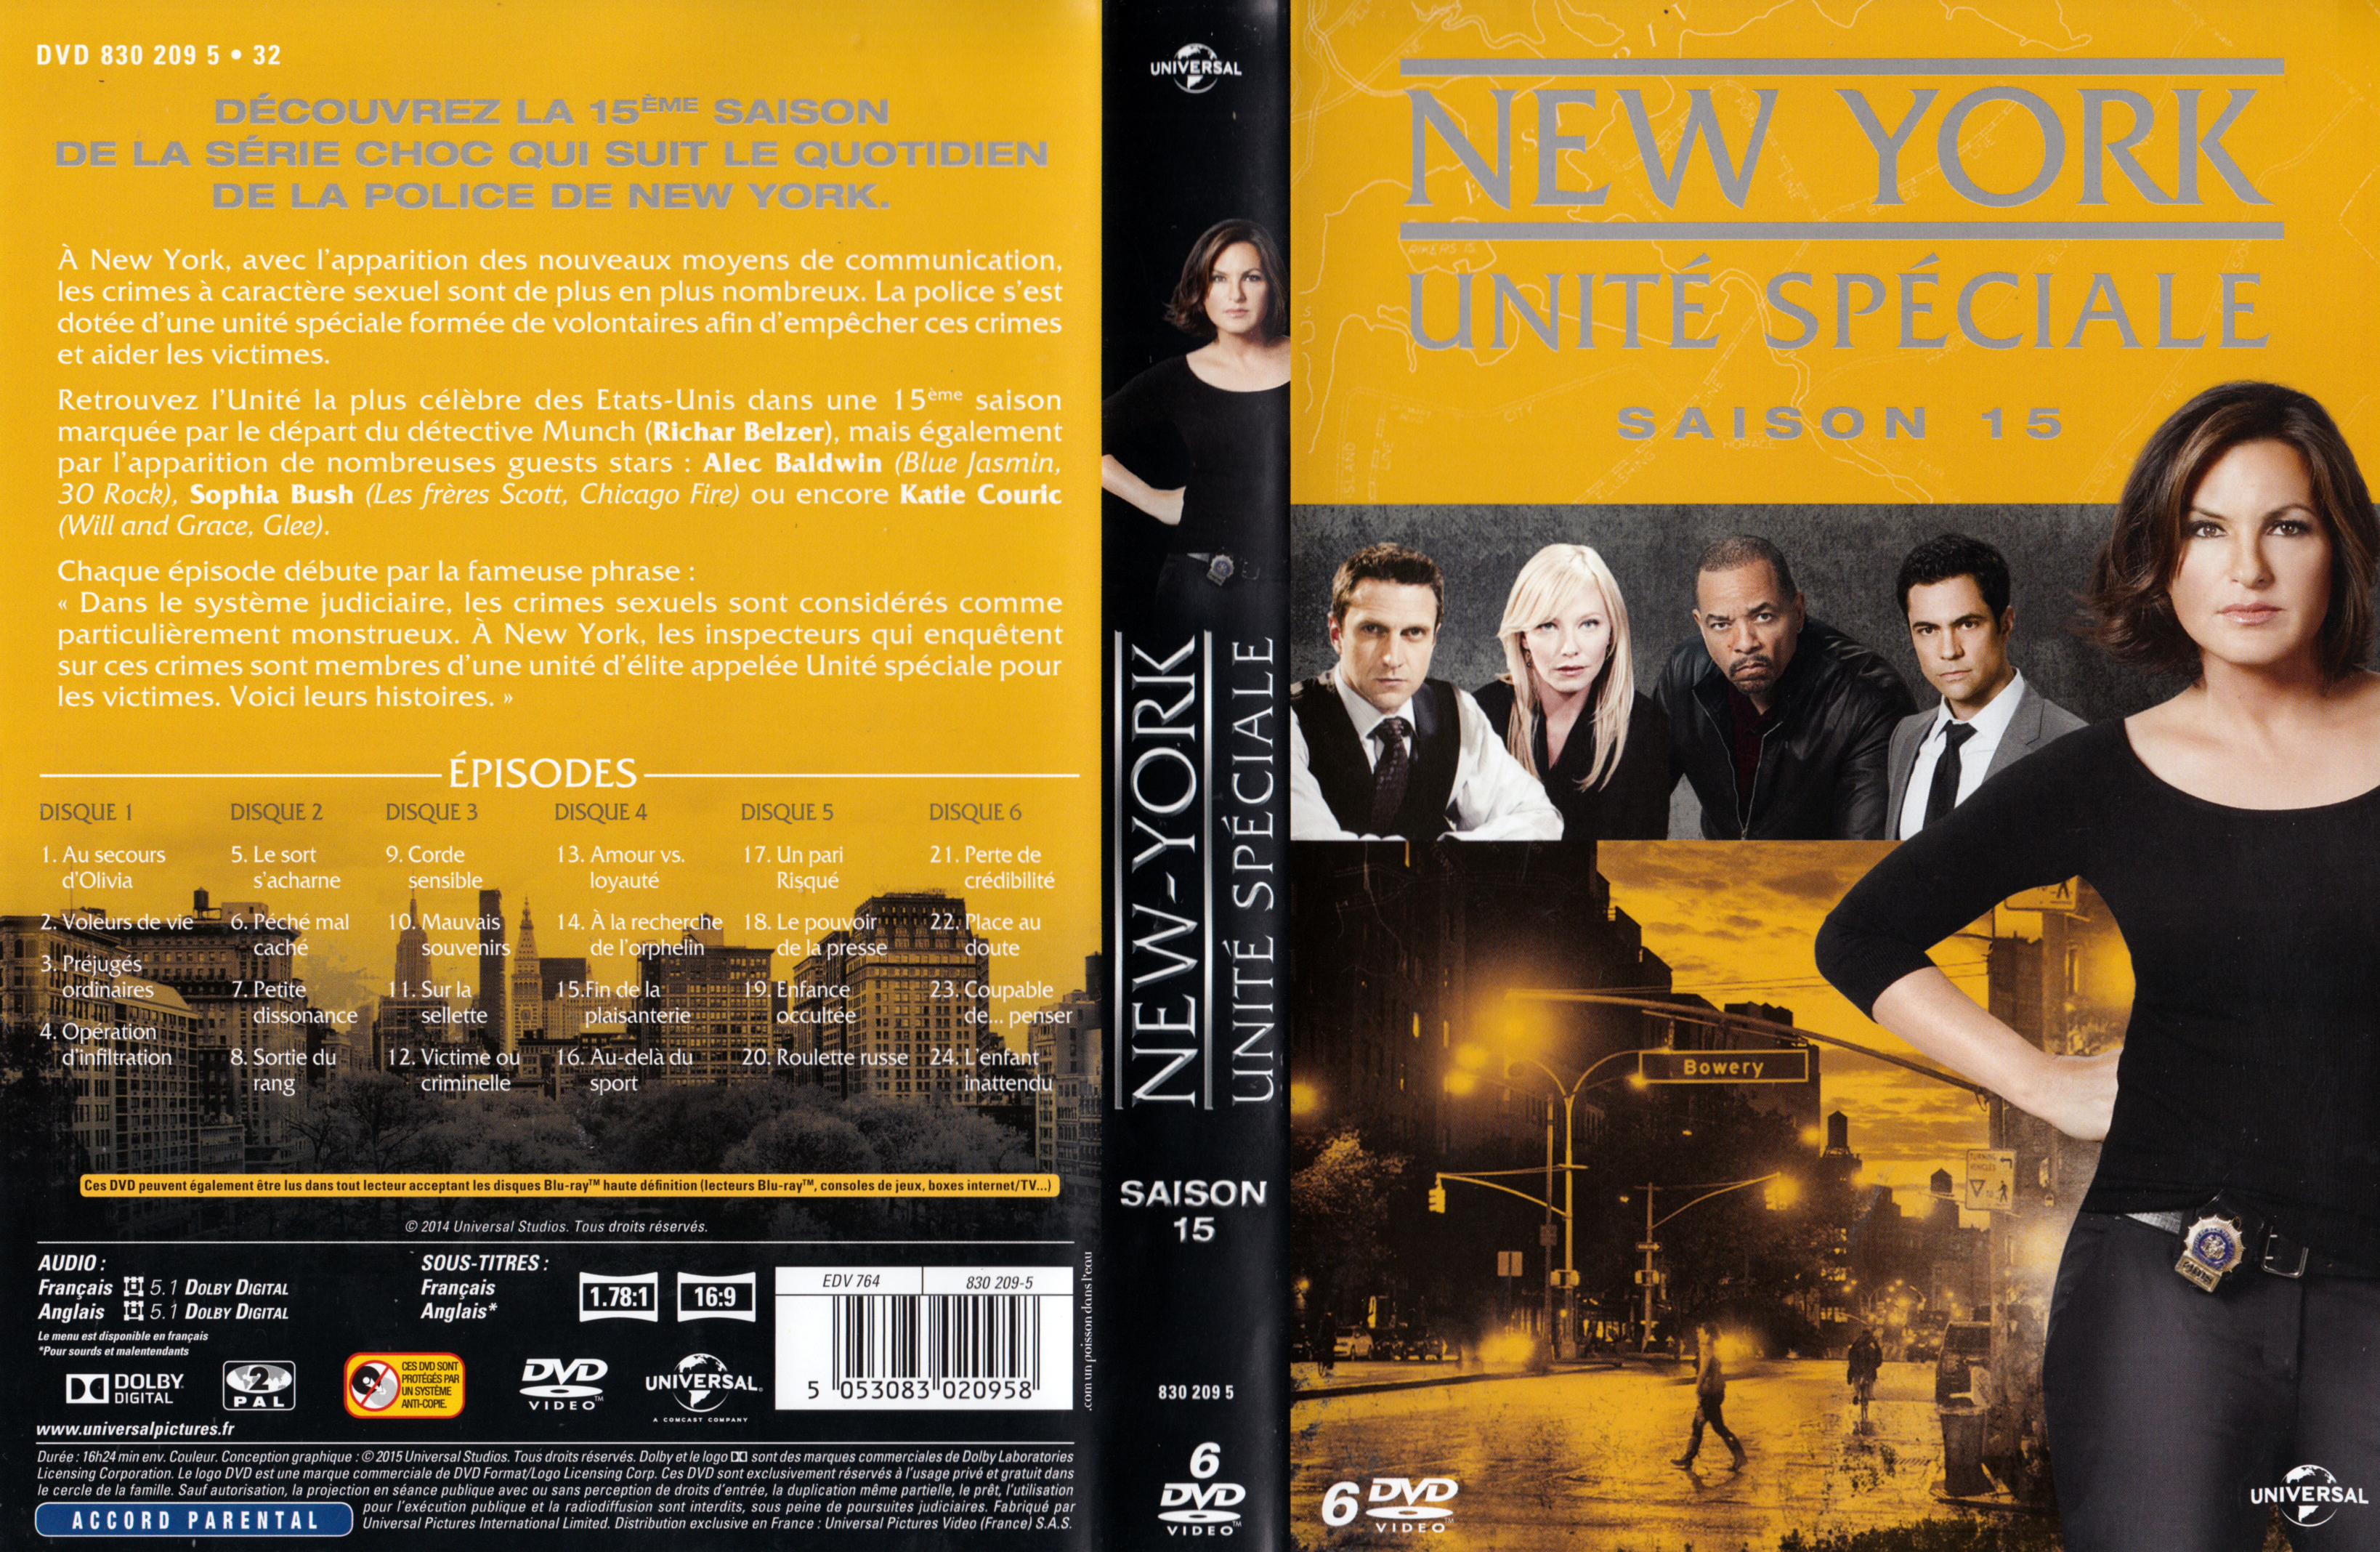 Jaquette DVD New York unit spciale saison 15